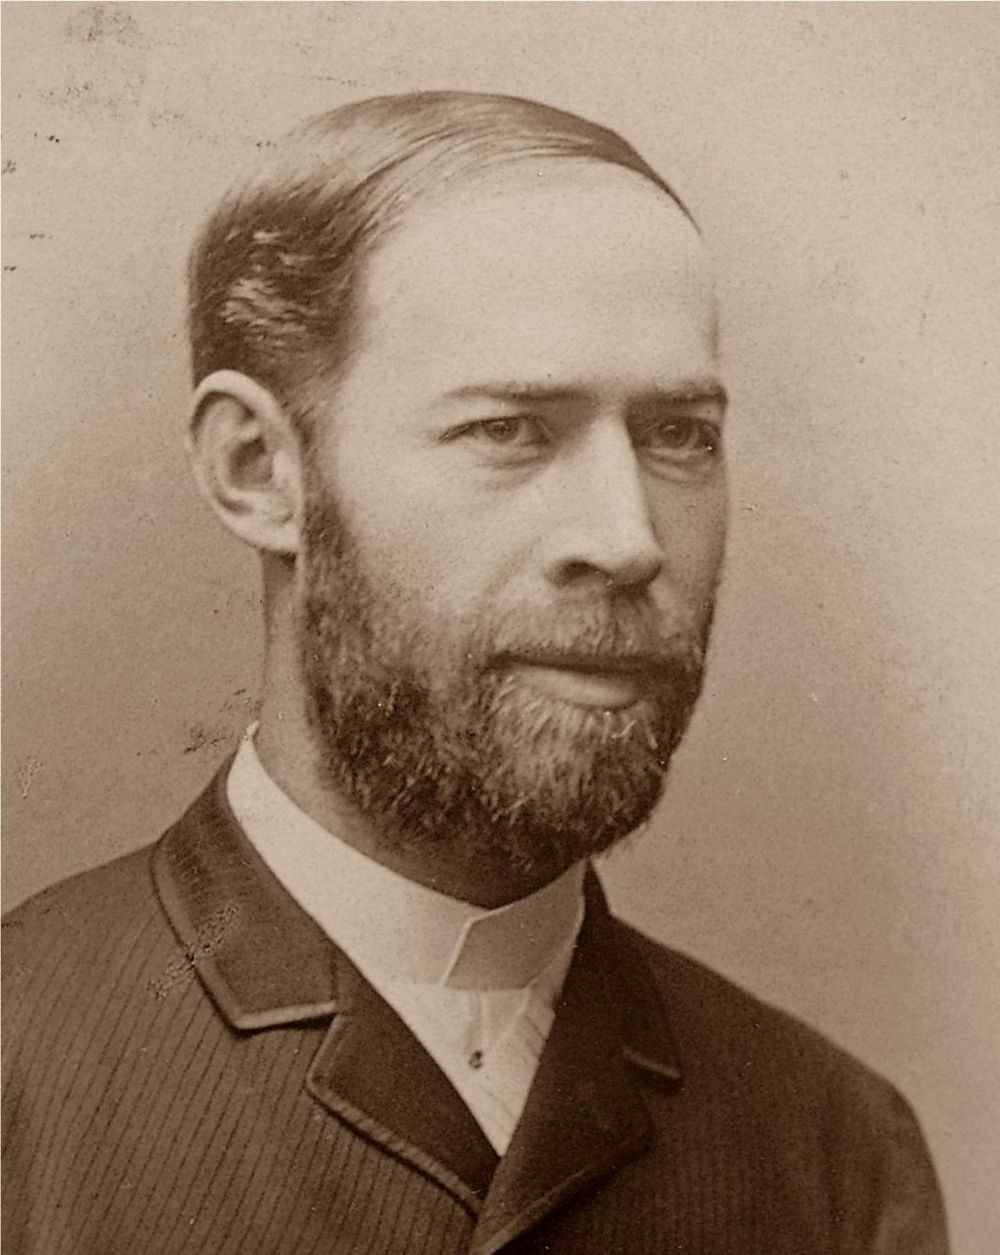 A photograph of Heinrich Hertz